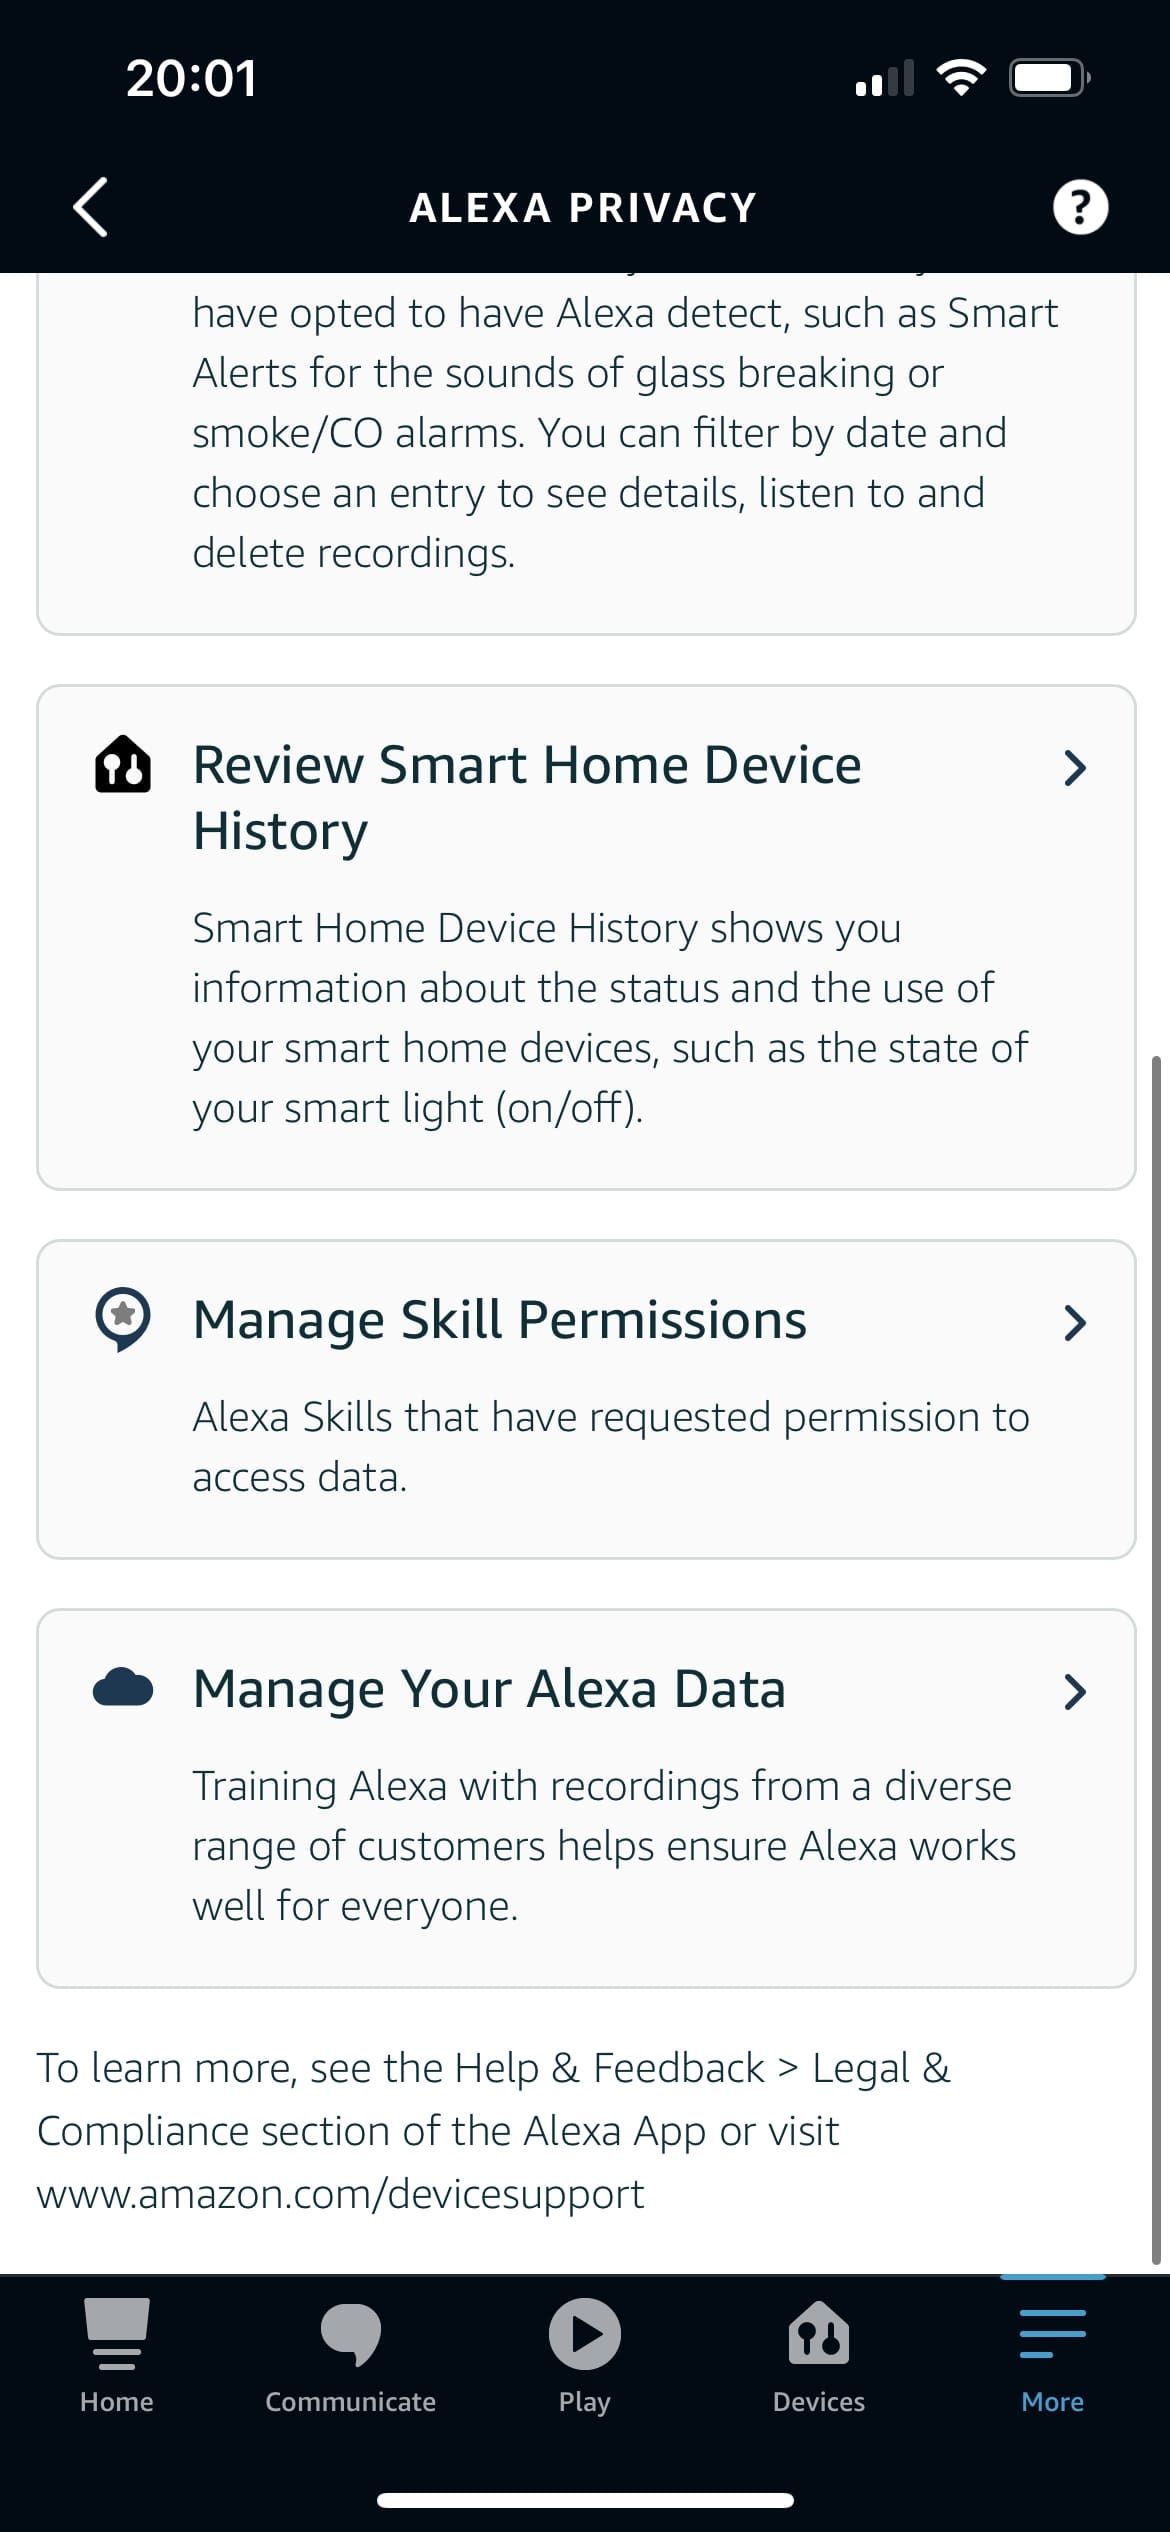 Alexa App Privacy Page